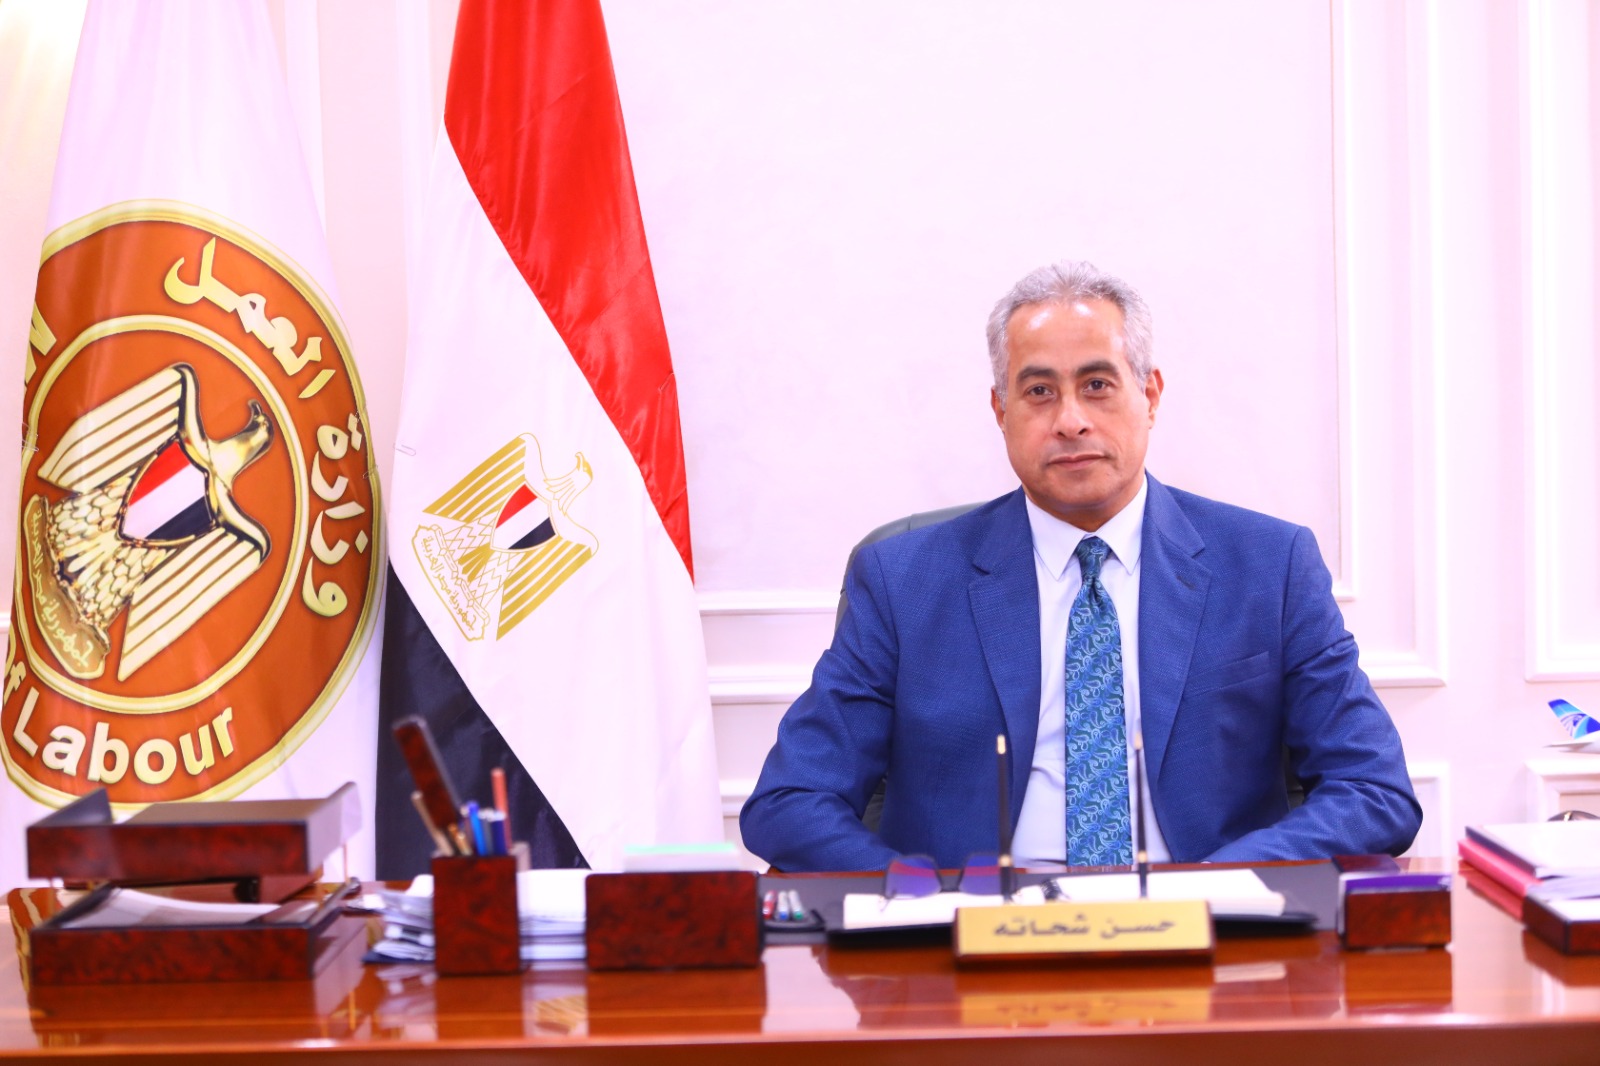 وزير العمل تنسيق مع السفارات والقنصليات لتقديم كافة التسهيلات لمشاركة العمالة المصرية في الانتخابات